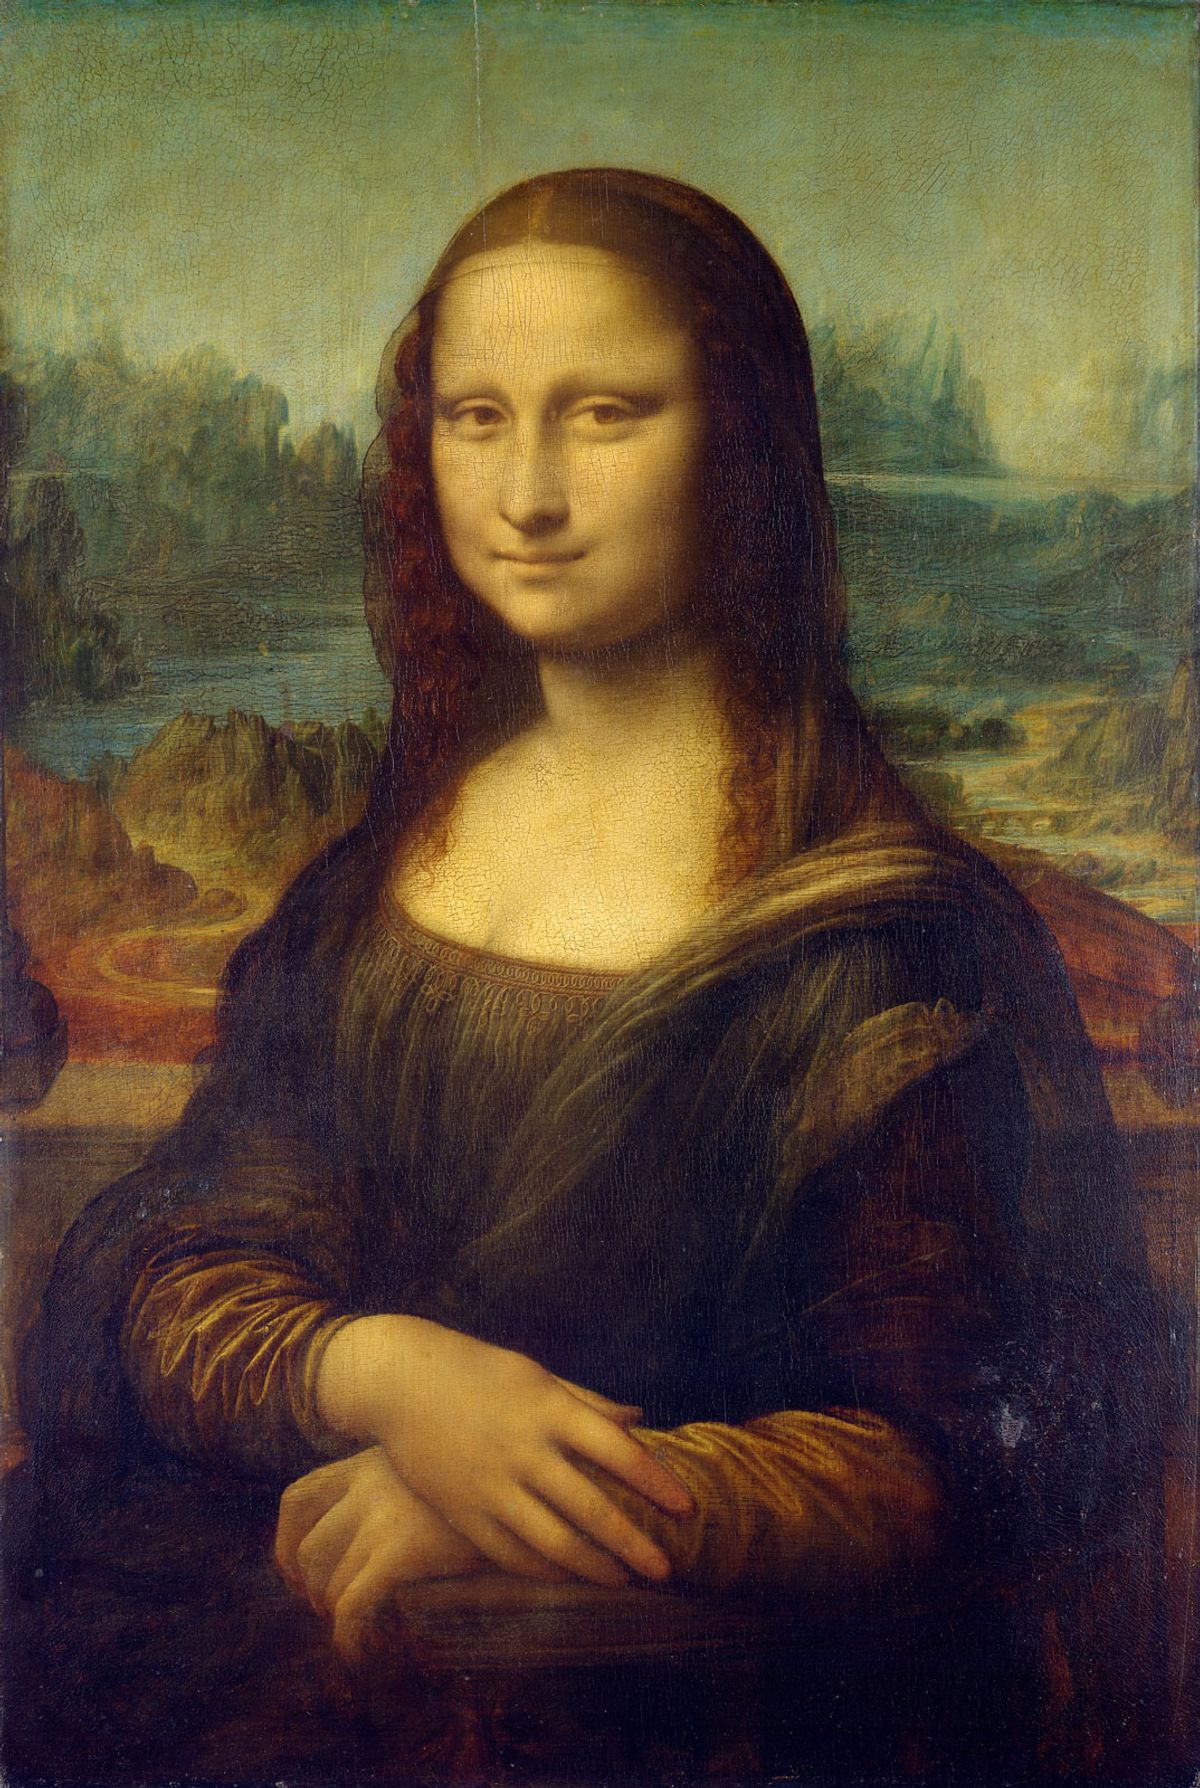 Leonardo da Vinci’s Mona Lisa (around 1503-19) 